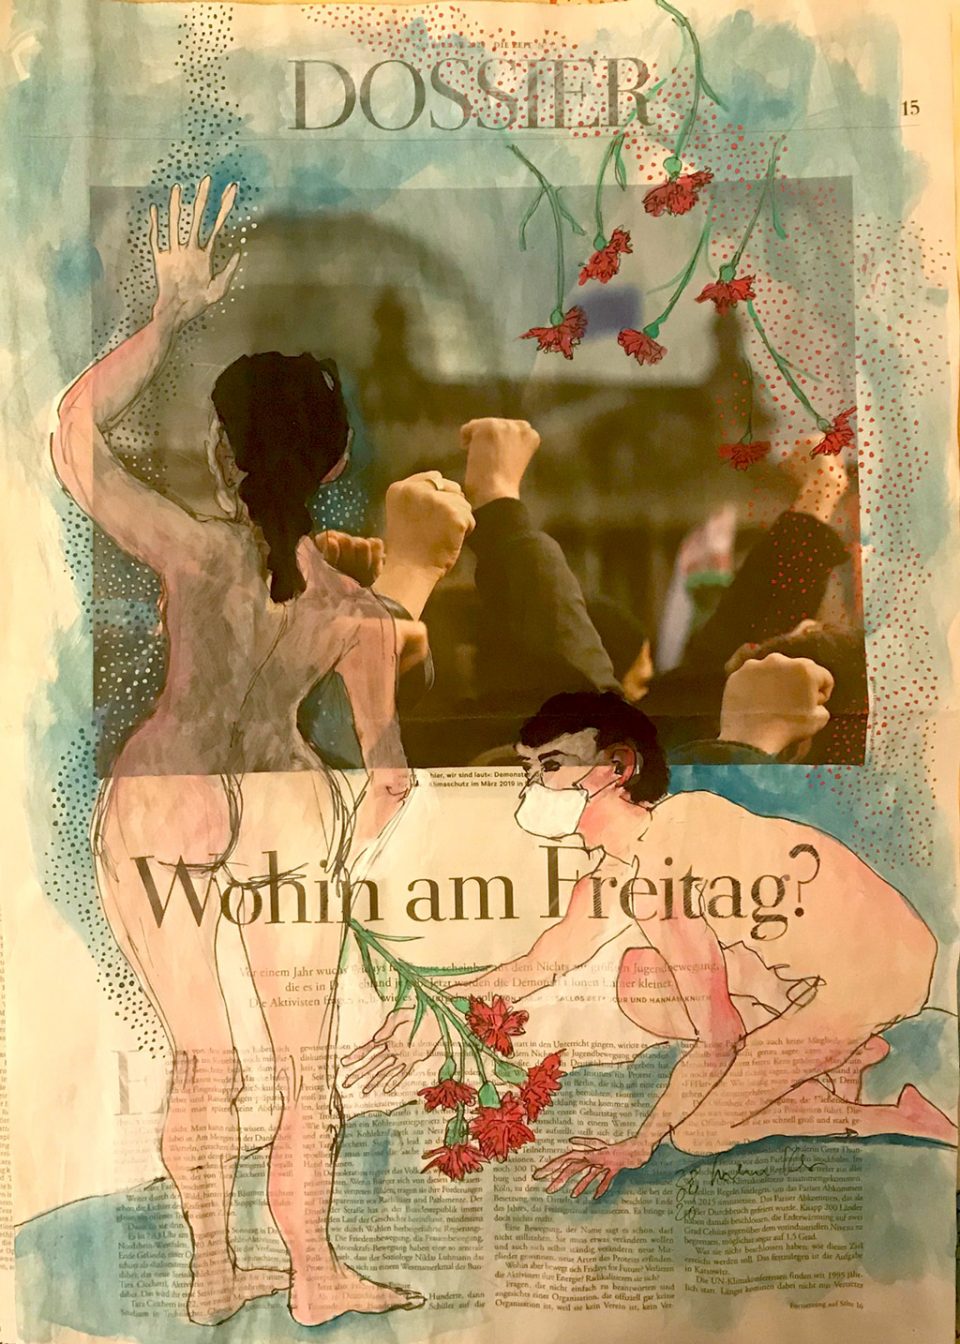 Wohin am Freitag – Figüerliche Zeichnung mit weiblichem und männlichem Akt und Nelken auf Artikel über FFF-Demonstration.